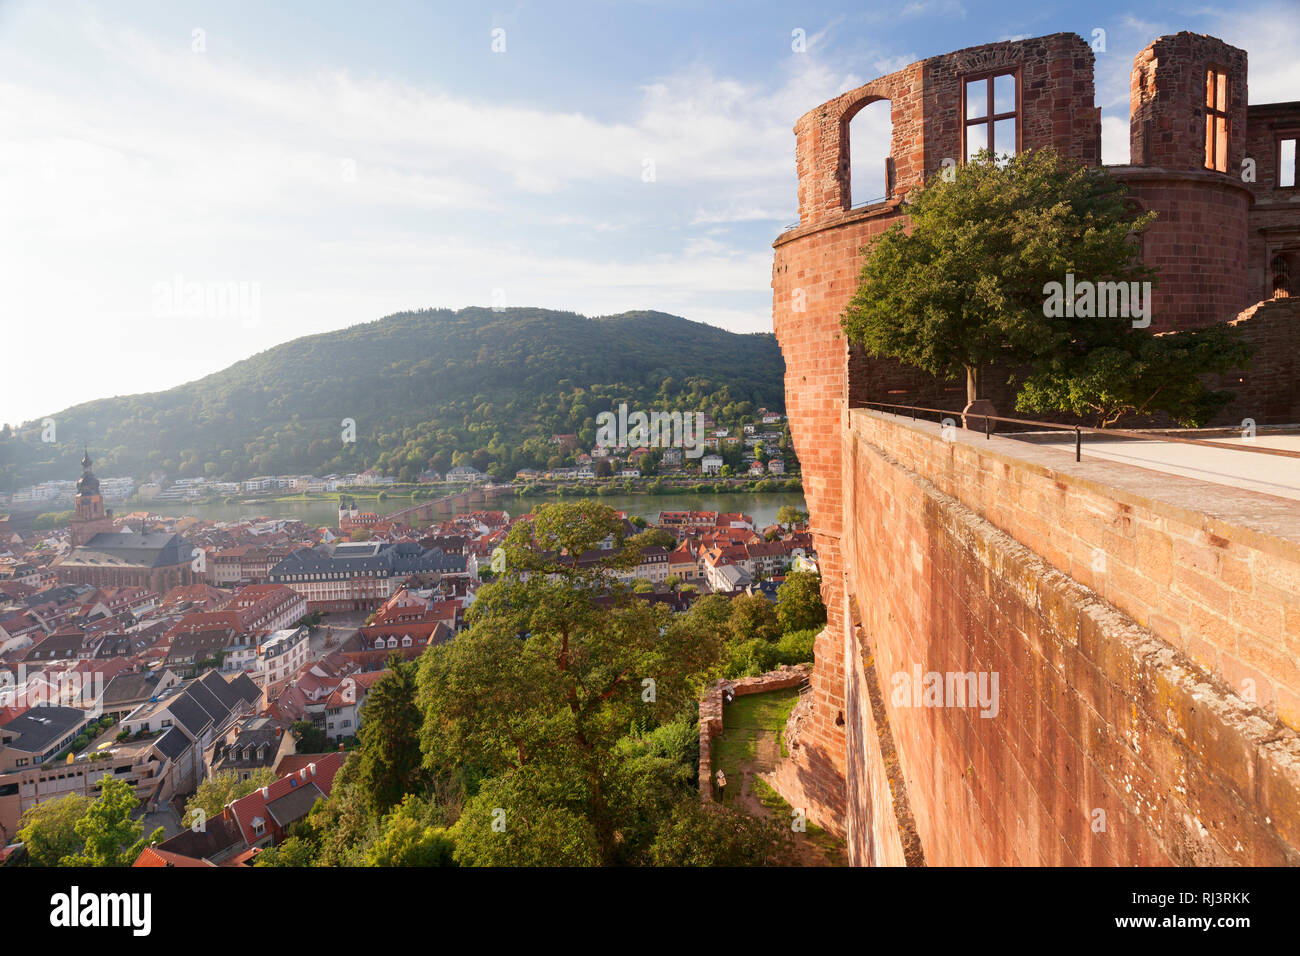 Blick vom Schloss auf die Altstadt, Heidelberg, Baden-Württemberg, Deutschland Stock Photo